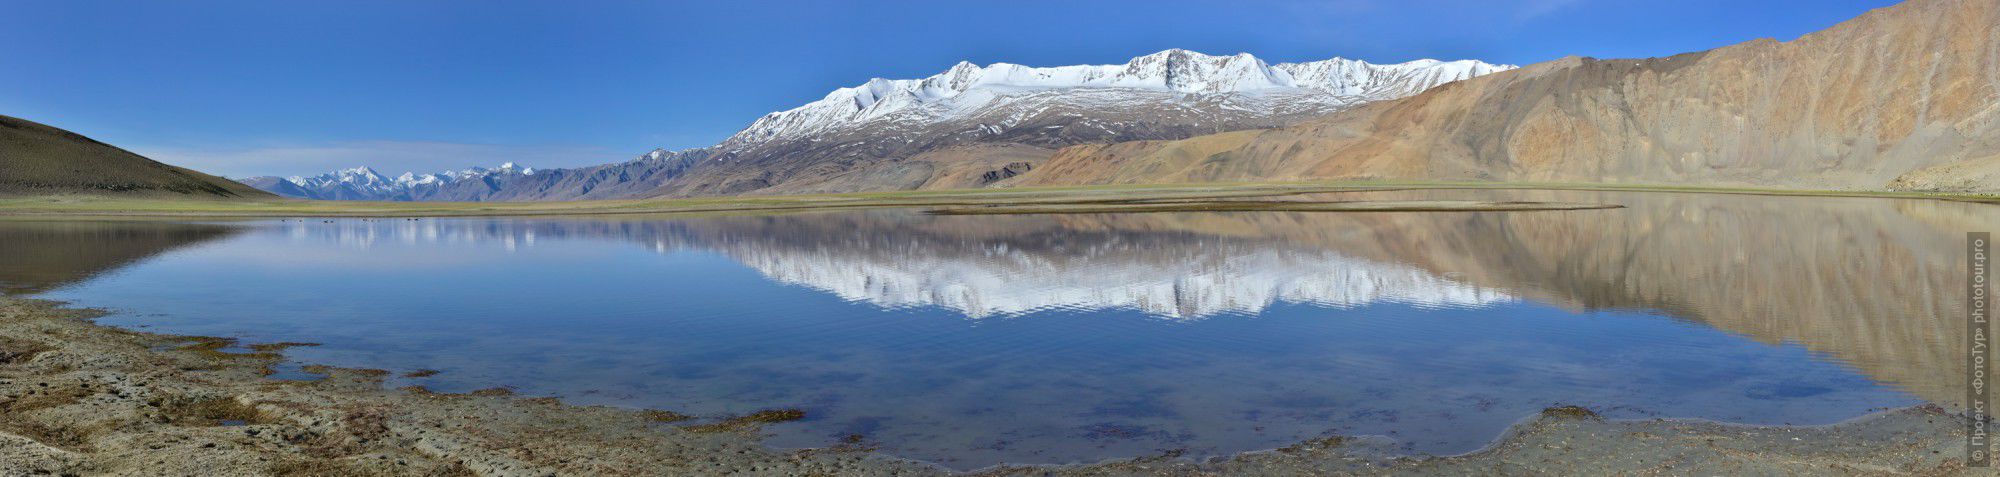 Фотография Прозрачное утро на озере Тсо Морири. Фототур по высокогорным оезрам Тибета, Ладакх.